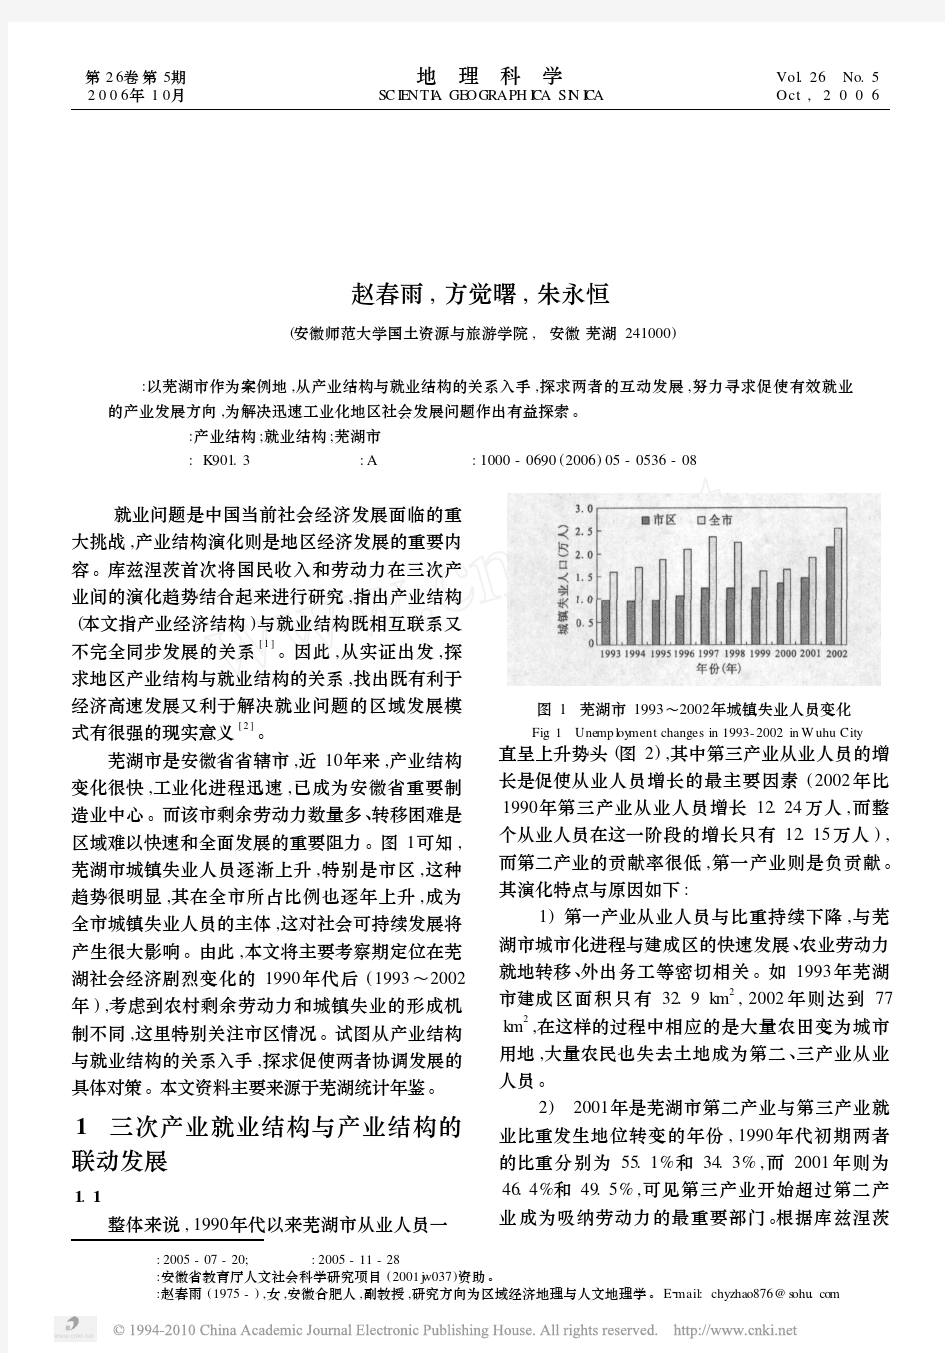 产业结构与就业结构关联研究_以芜湖市为例